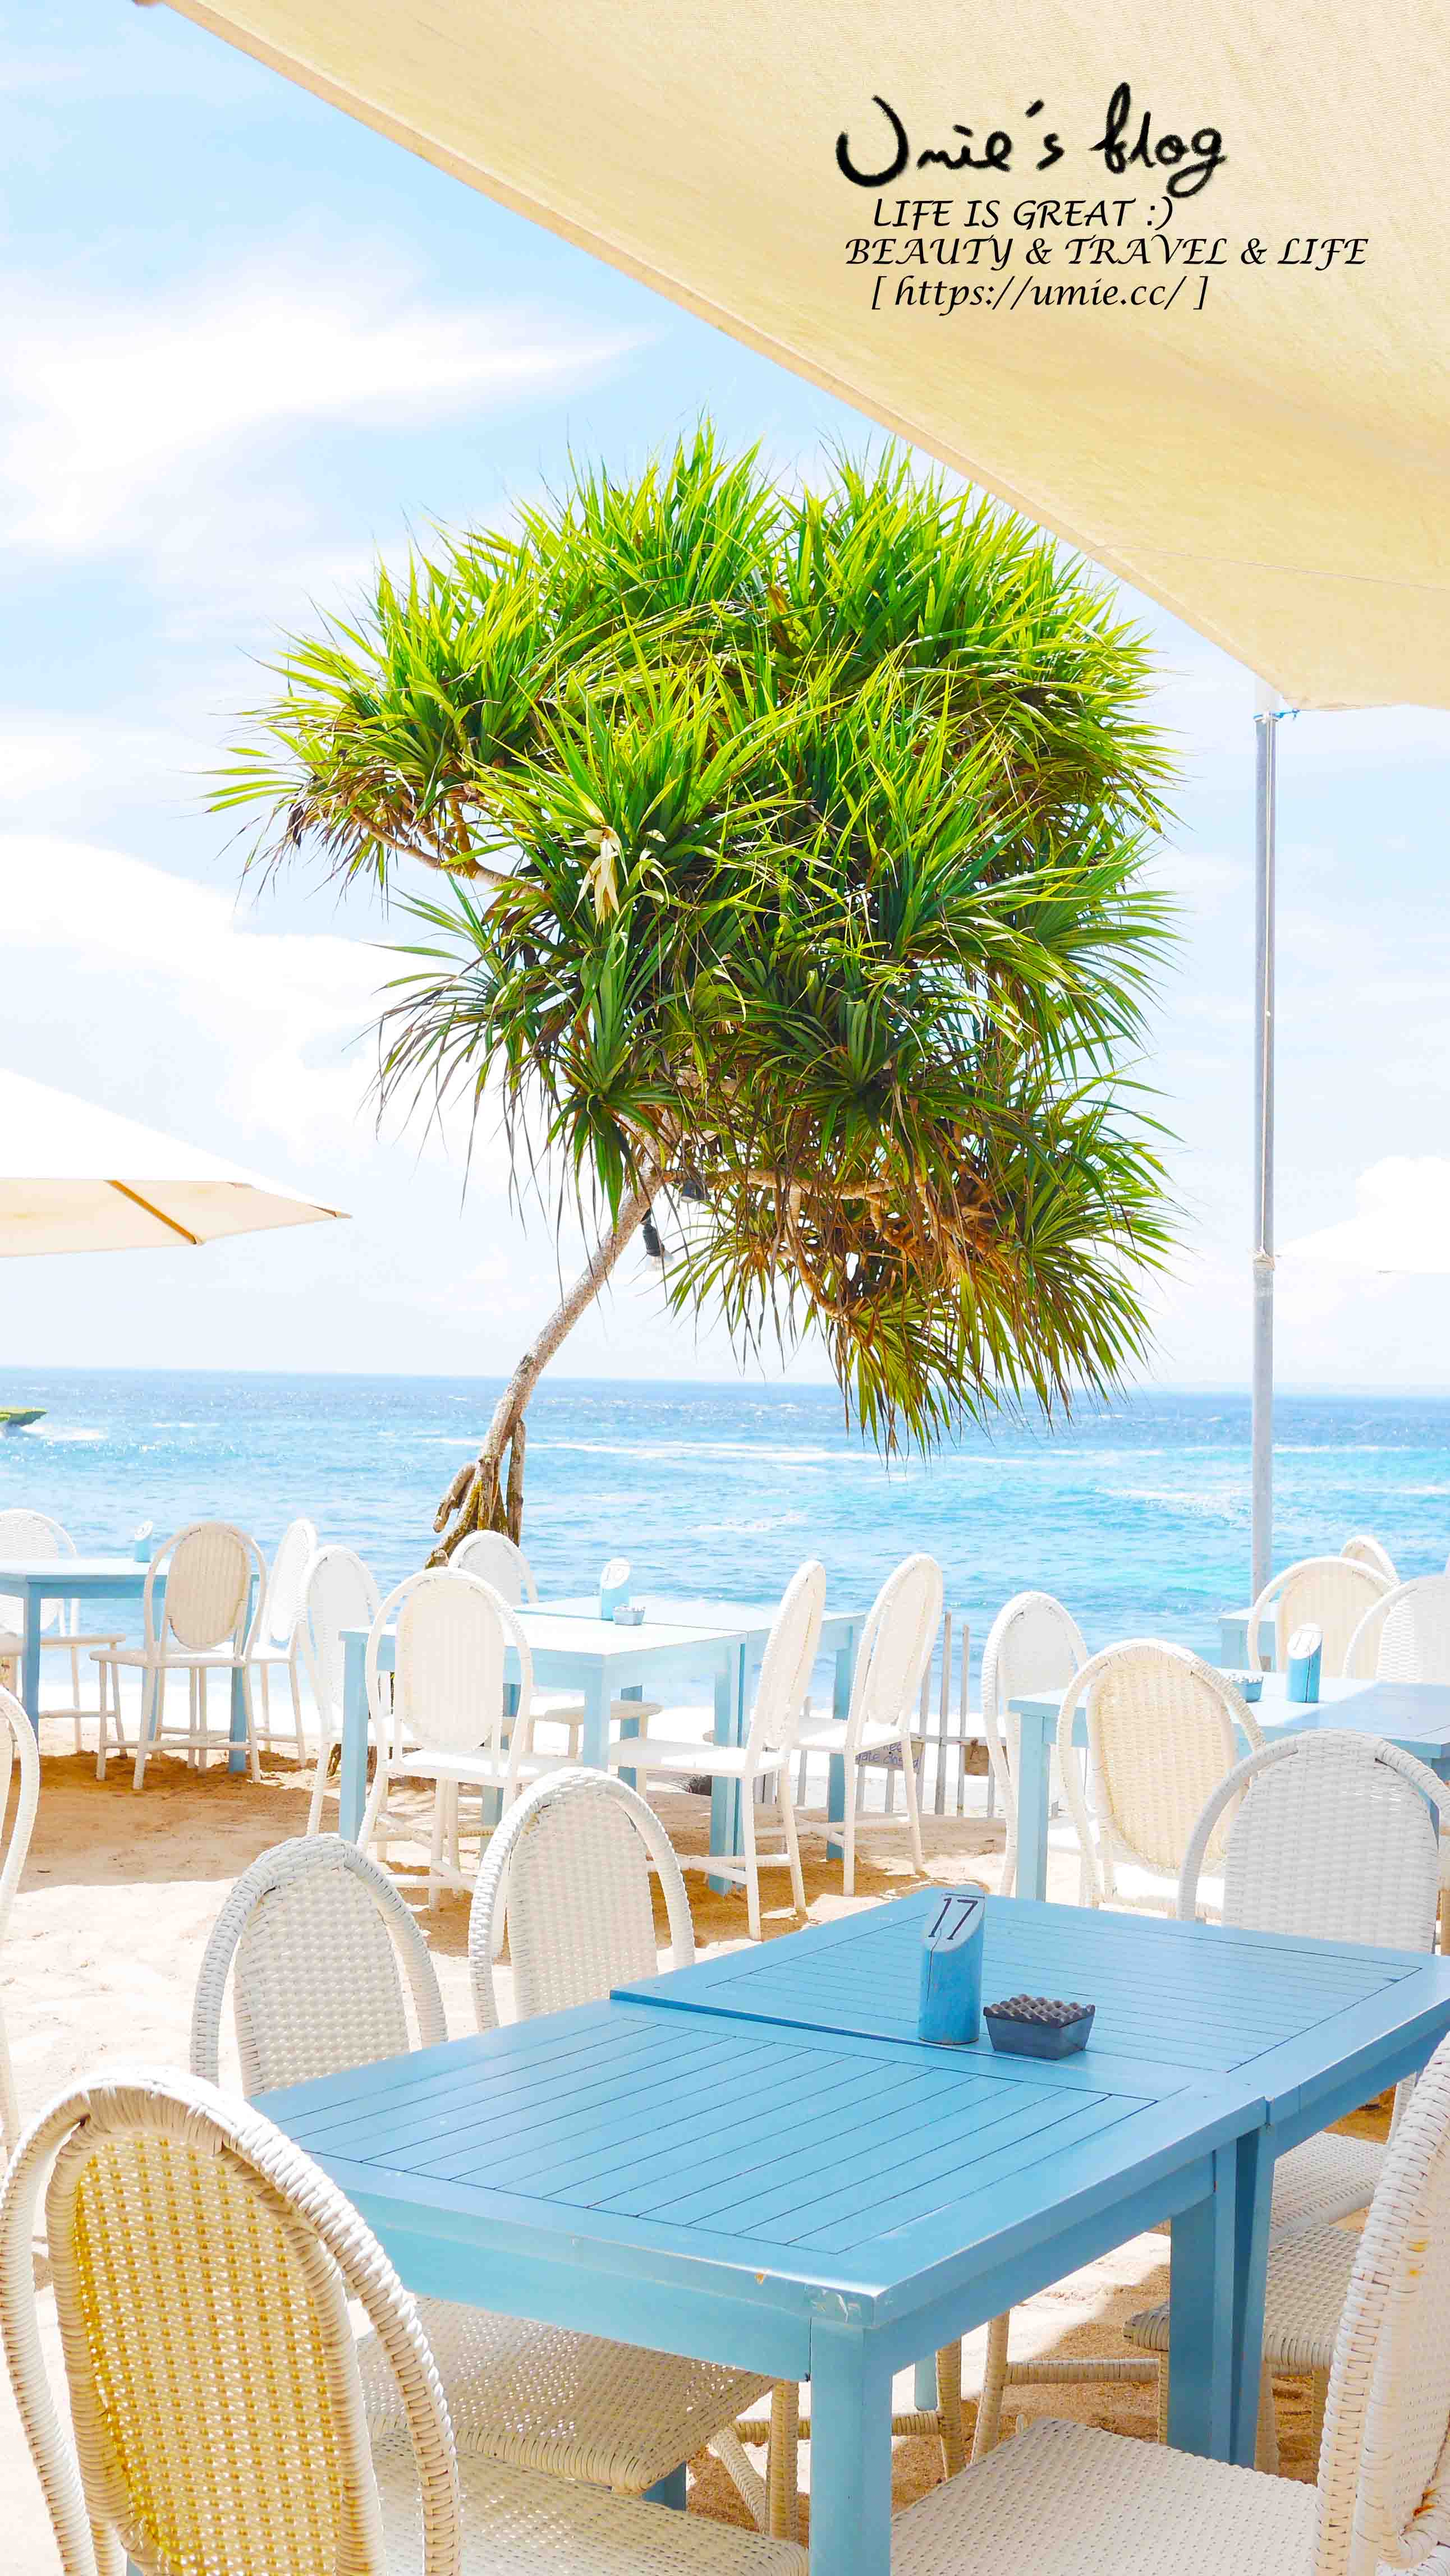 (巴里島)峇里島藍夢島行程景點推薦| 閨蜜島嶼渡假 8天行程總覽!按摩SPA,必吃美食海景餐廳,超美飯店住宿!